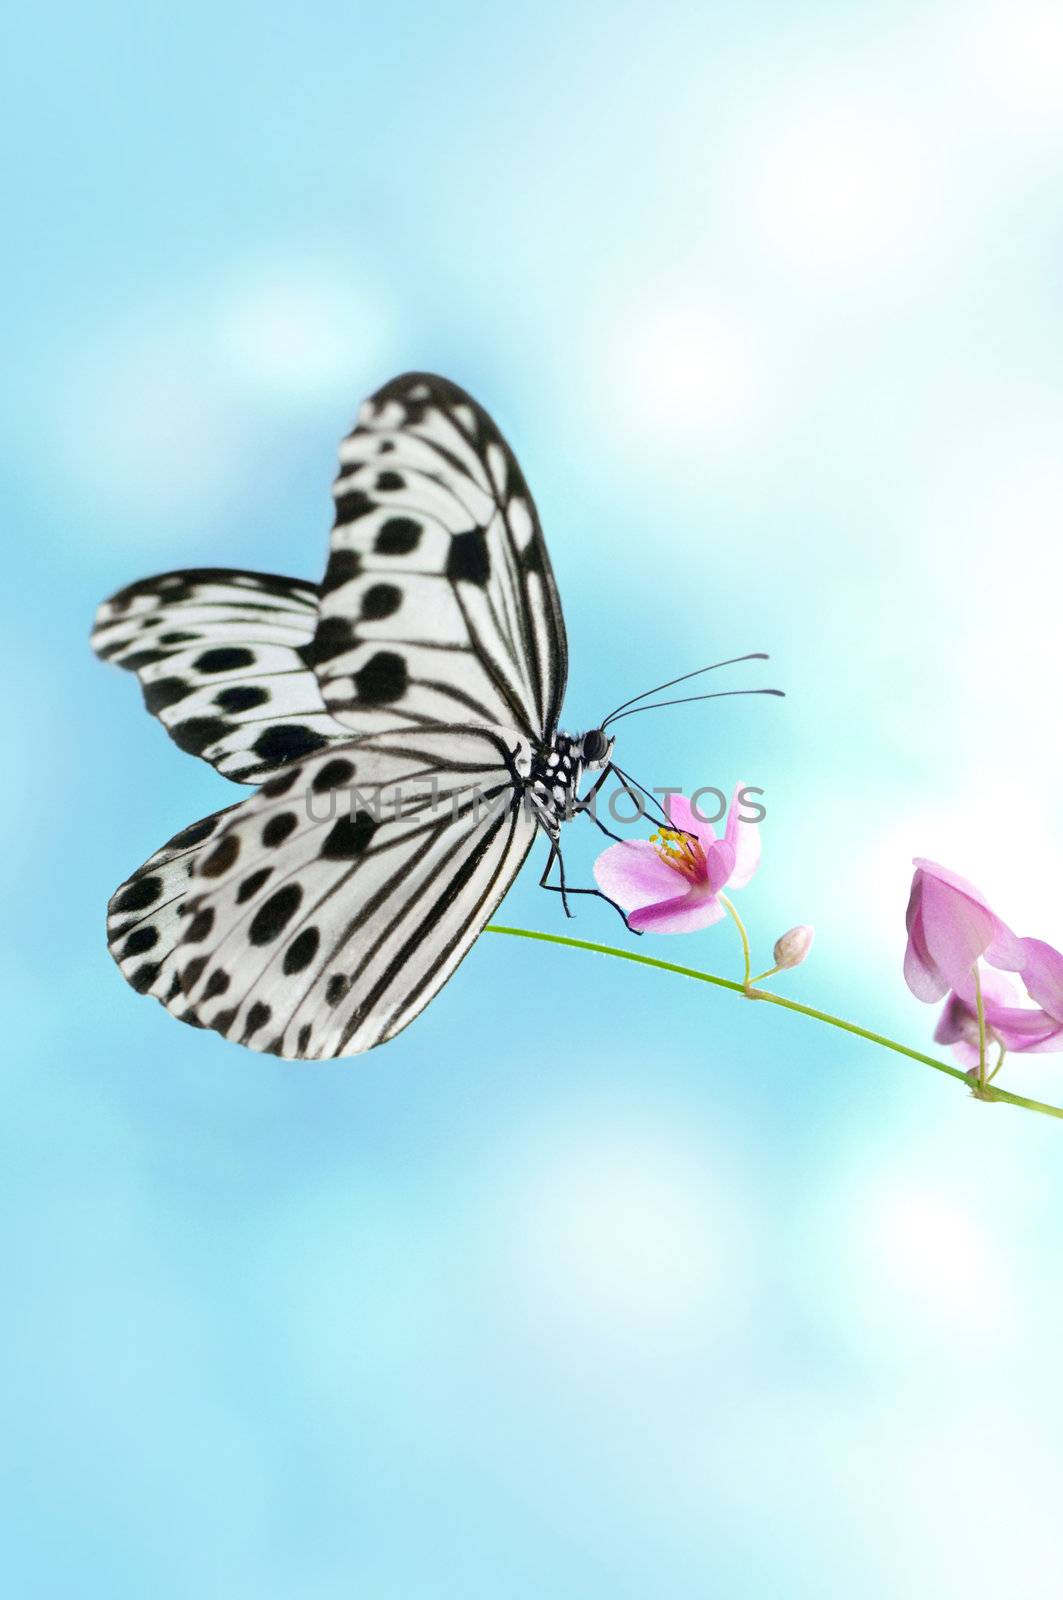 Butterfly by szefei